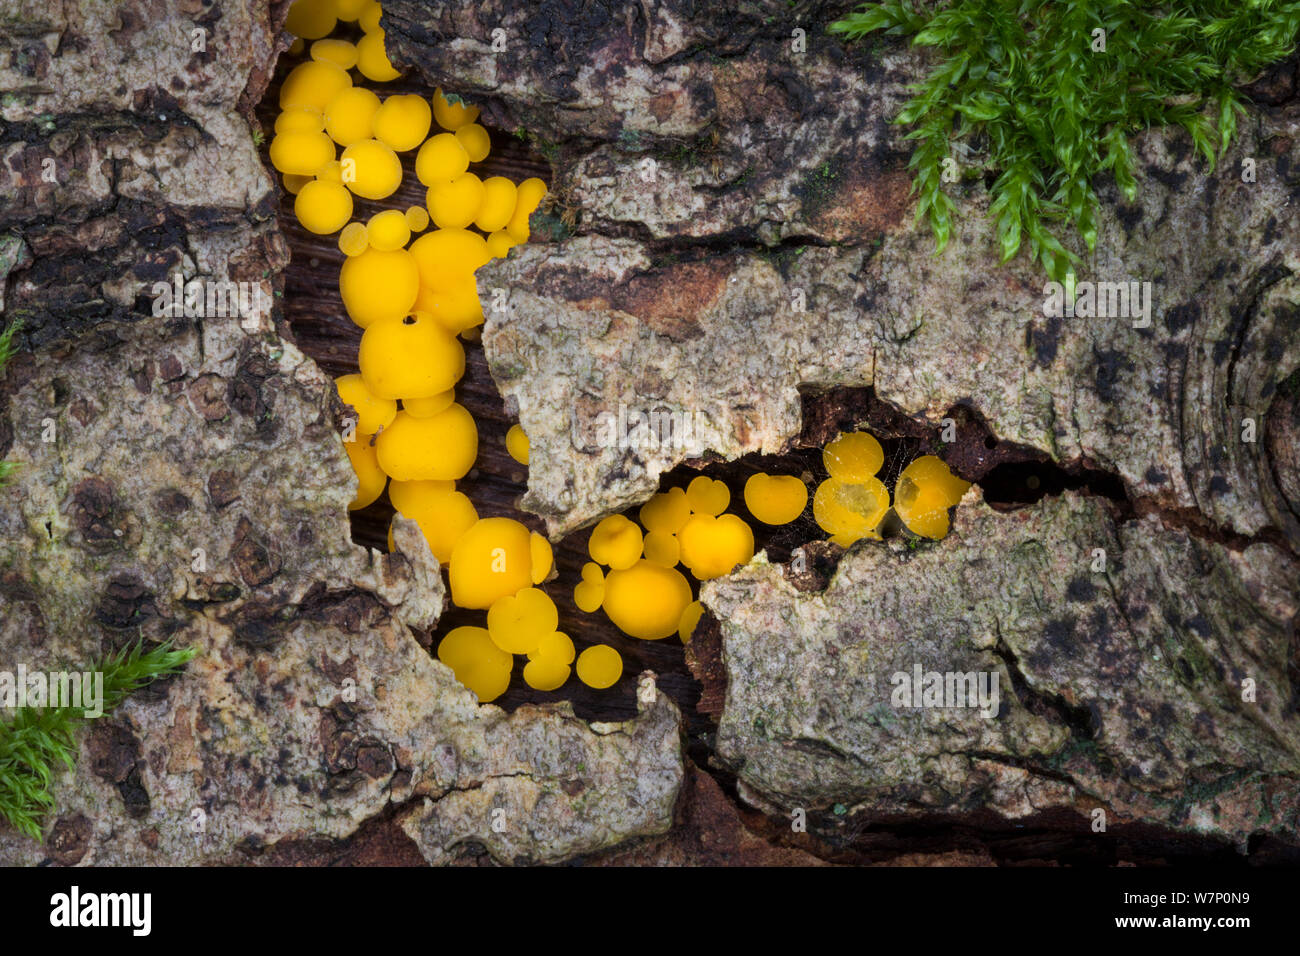 Discothèque / jaune citron tasses fée champignon (Bisporella citrina) sur la décomposition du bois de feuillus, parc national de Peak District, Derbyshire, Royaume-Uni. Octobre. Banque D'Images